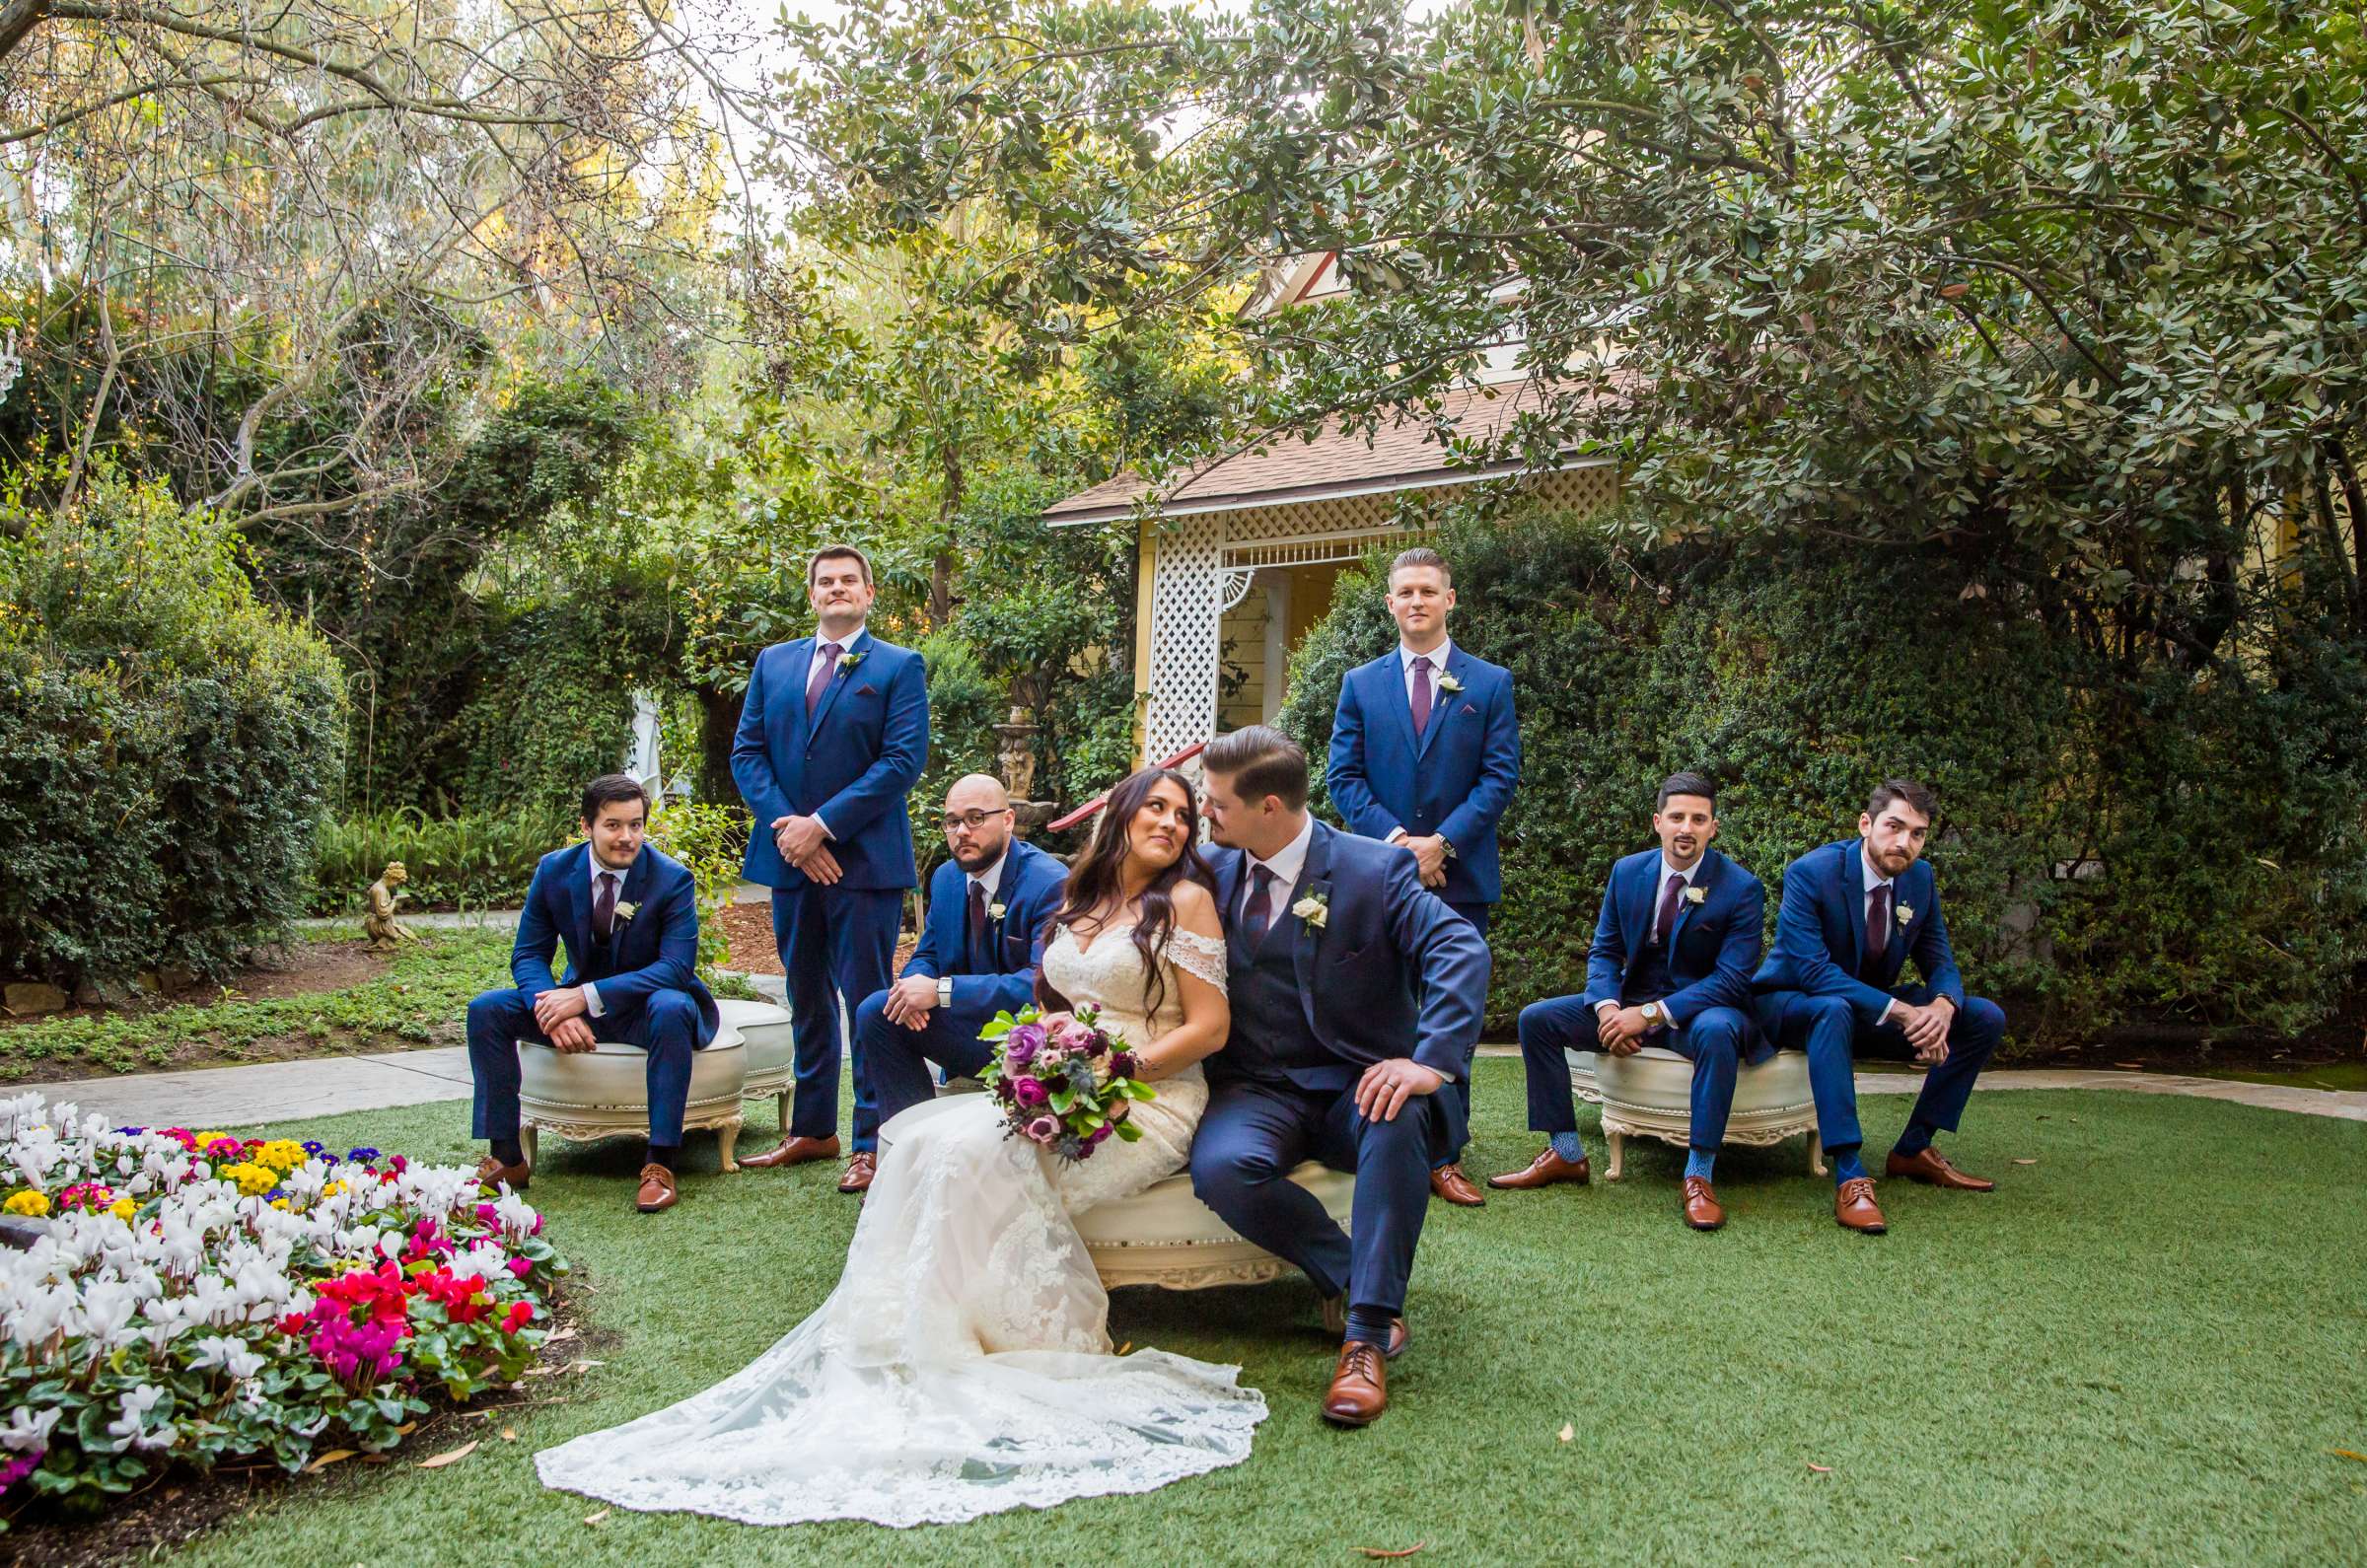 Twin Oaks House & Gardens Wedding Estate Wedding, Stephanie and Ilija Wedding Photo #116 by True Photography